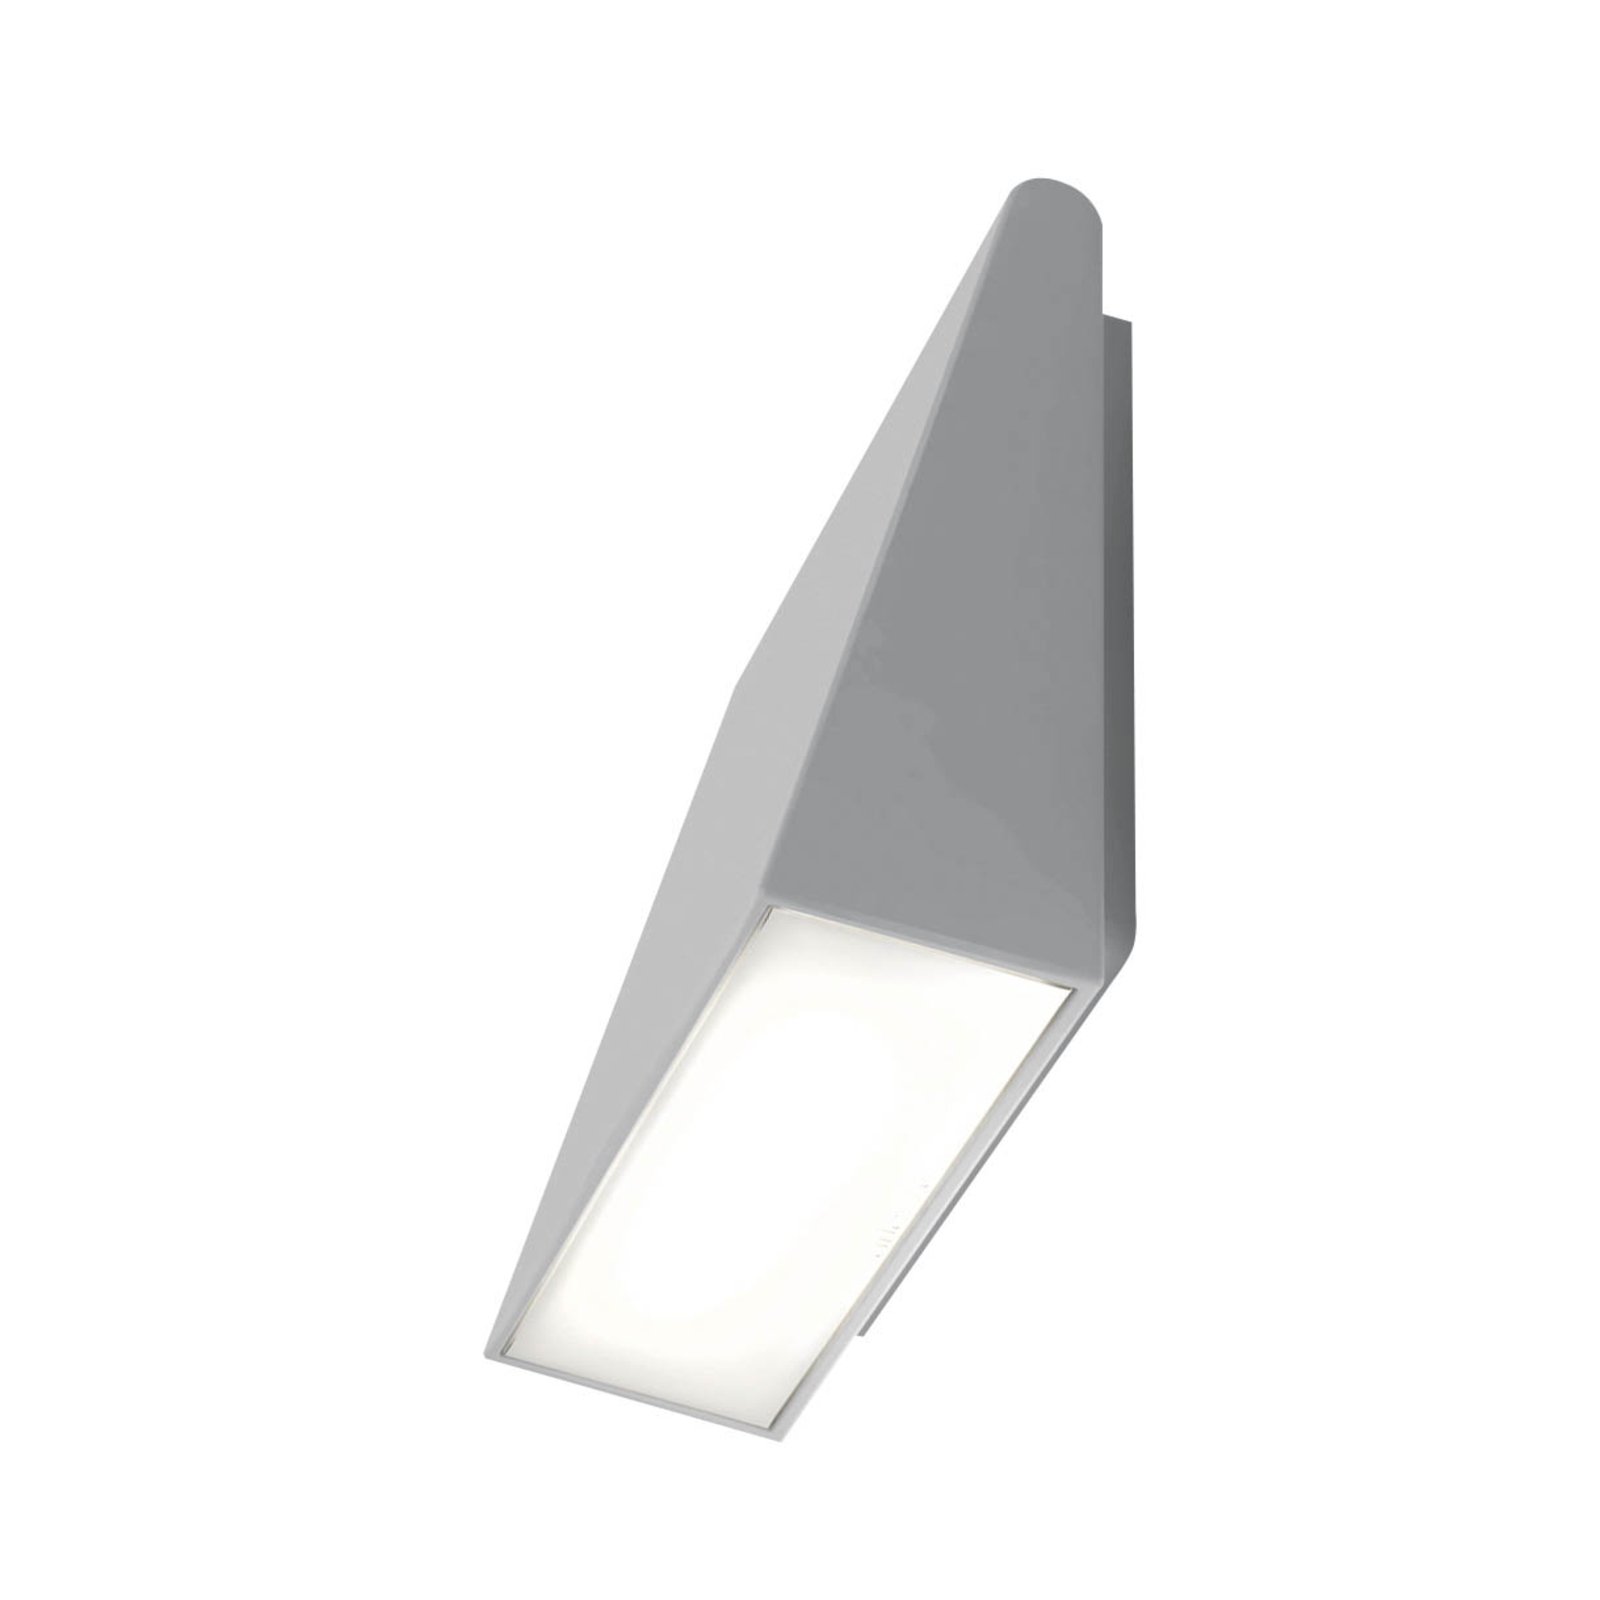 Artemide Cuneo LED venkovní svítidlo, šedé